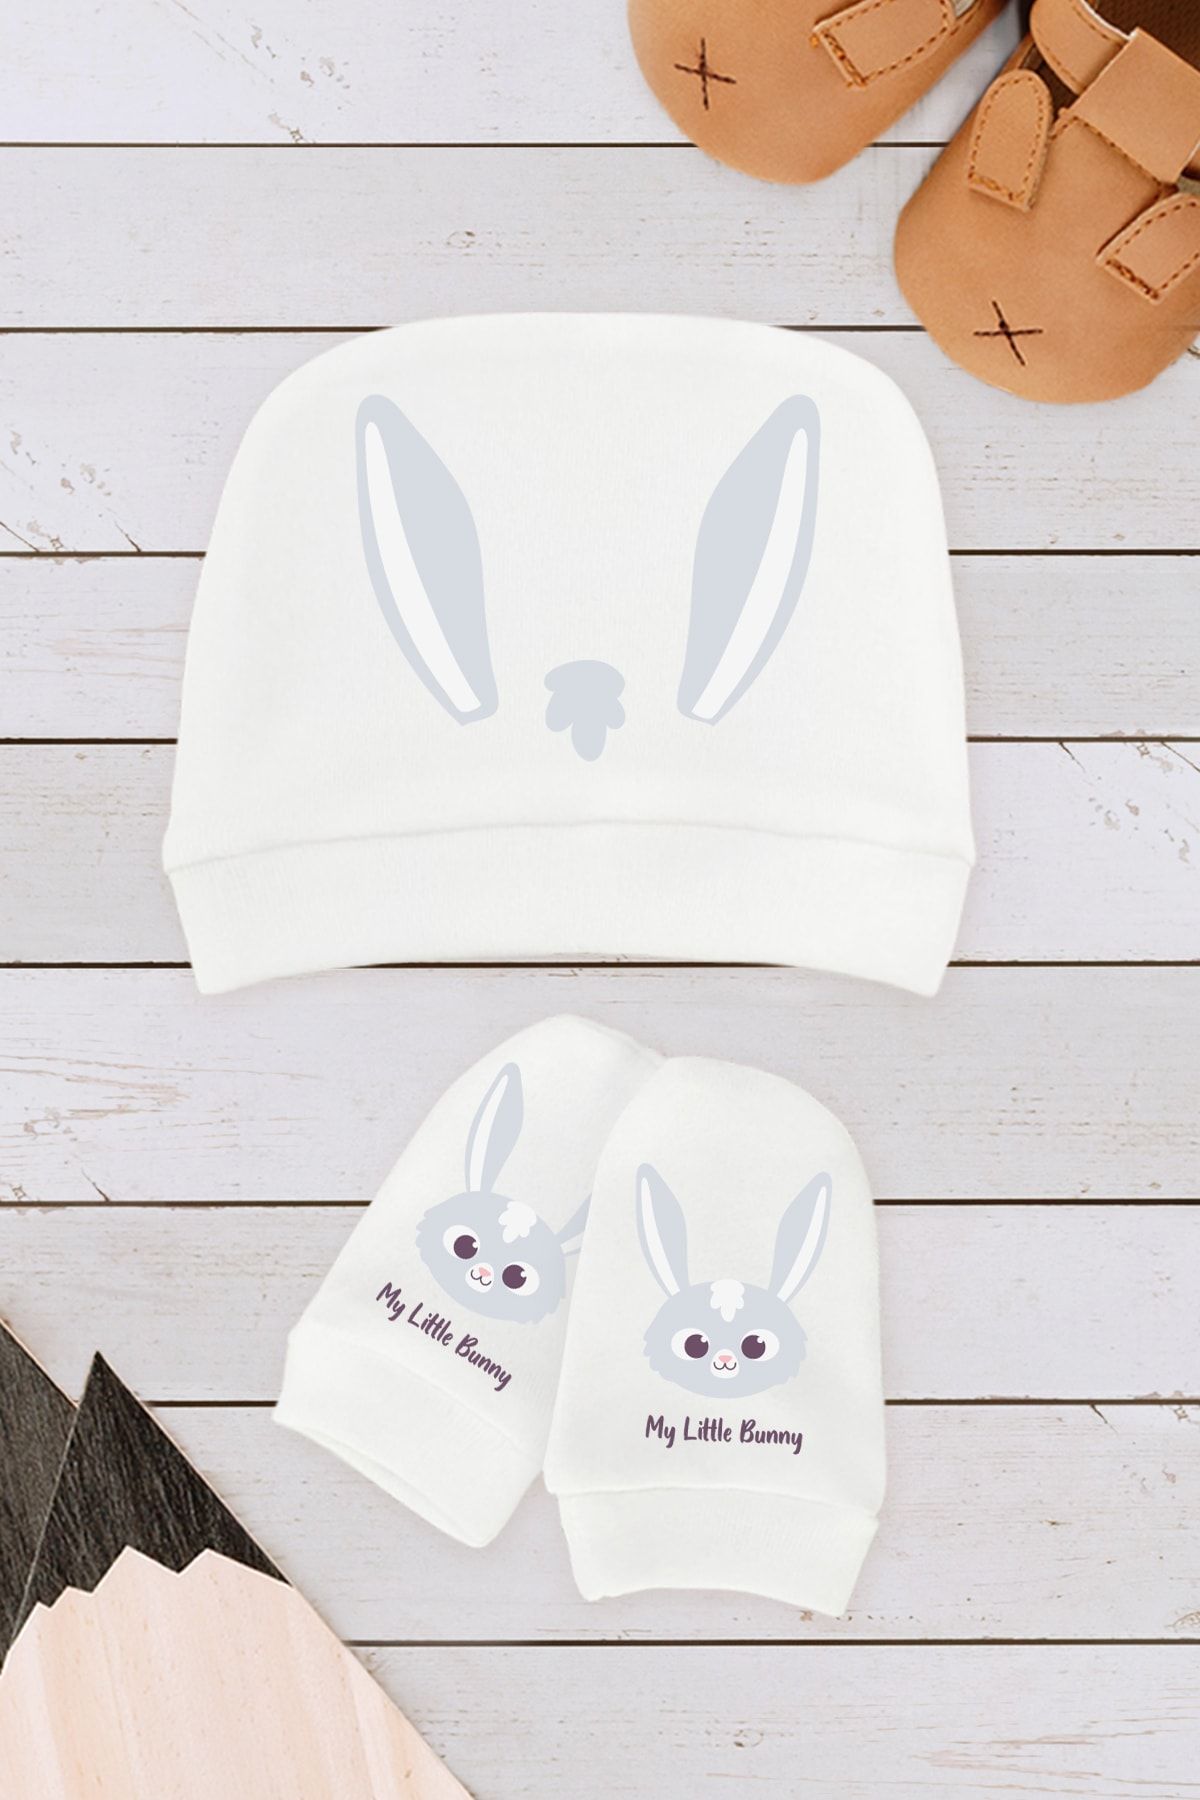 Kio Tasarım Tavşan Organik Yeni Doğan Eldiven Şapka Hediyelik 2 Li Takım Doğum Seti Hediyesi Pamuklu Baskılı